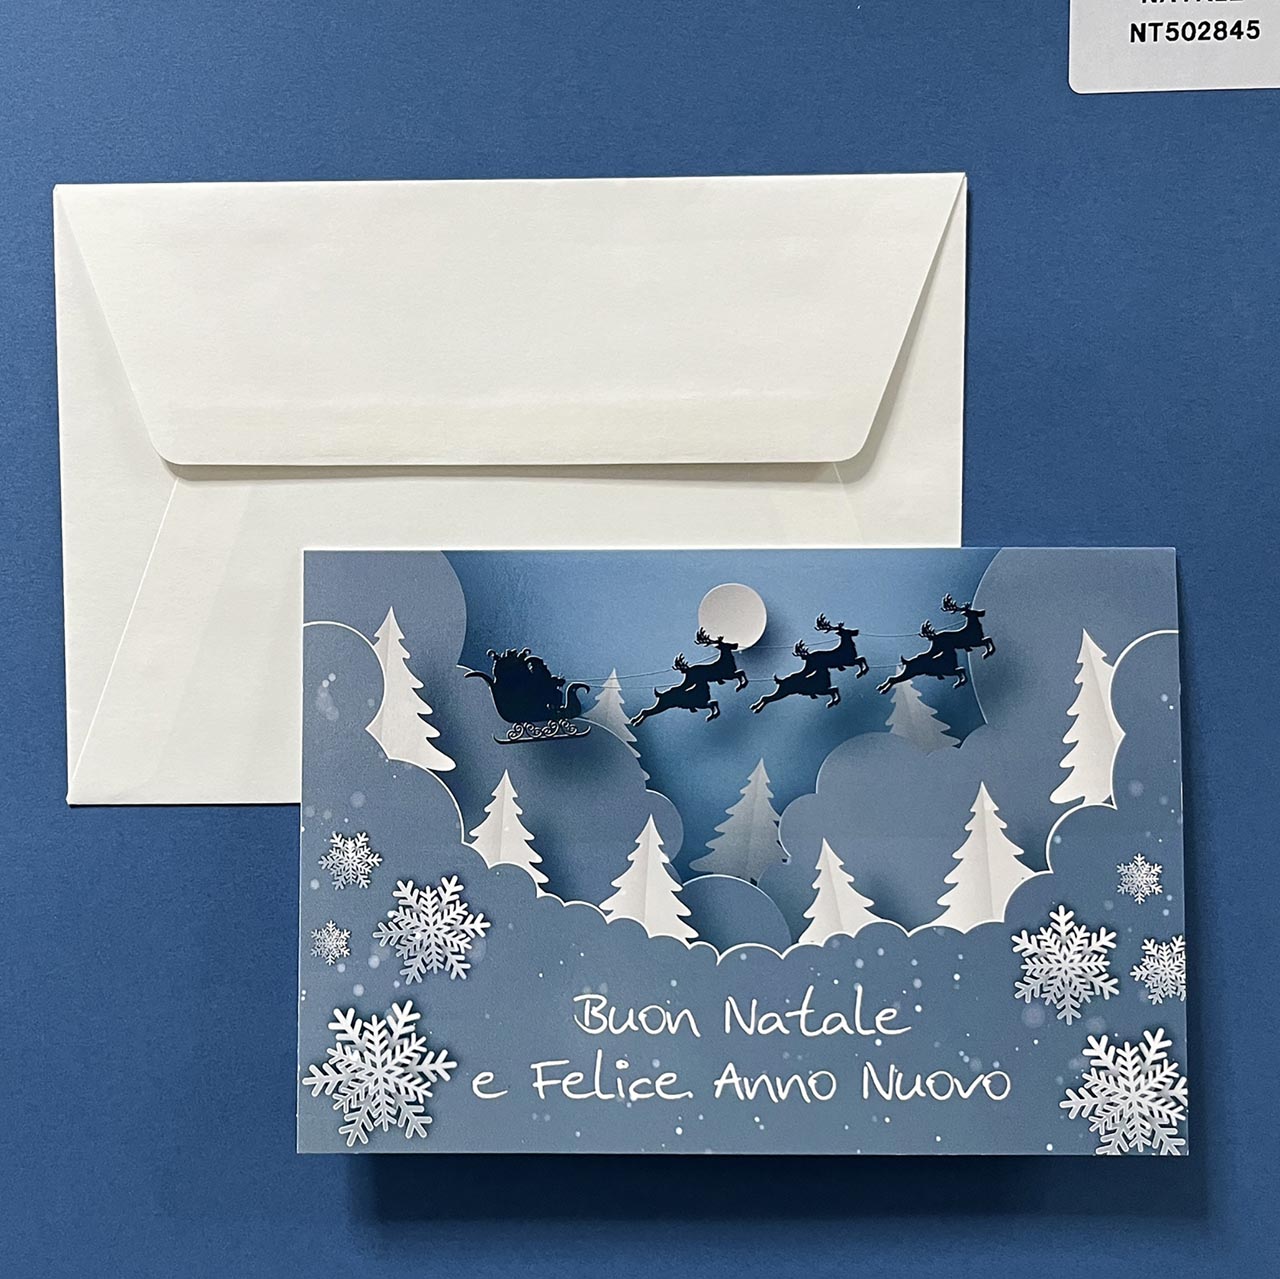 Biglietto di Natale personalizzabile orizzontale. Copertina lucida sui toni del blu con una illustrazione moderna. 